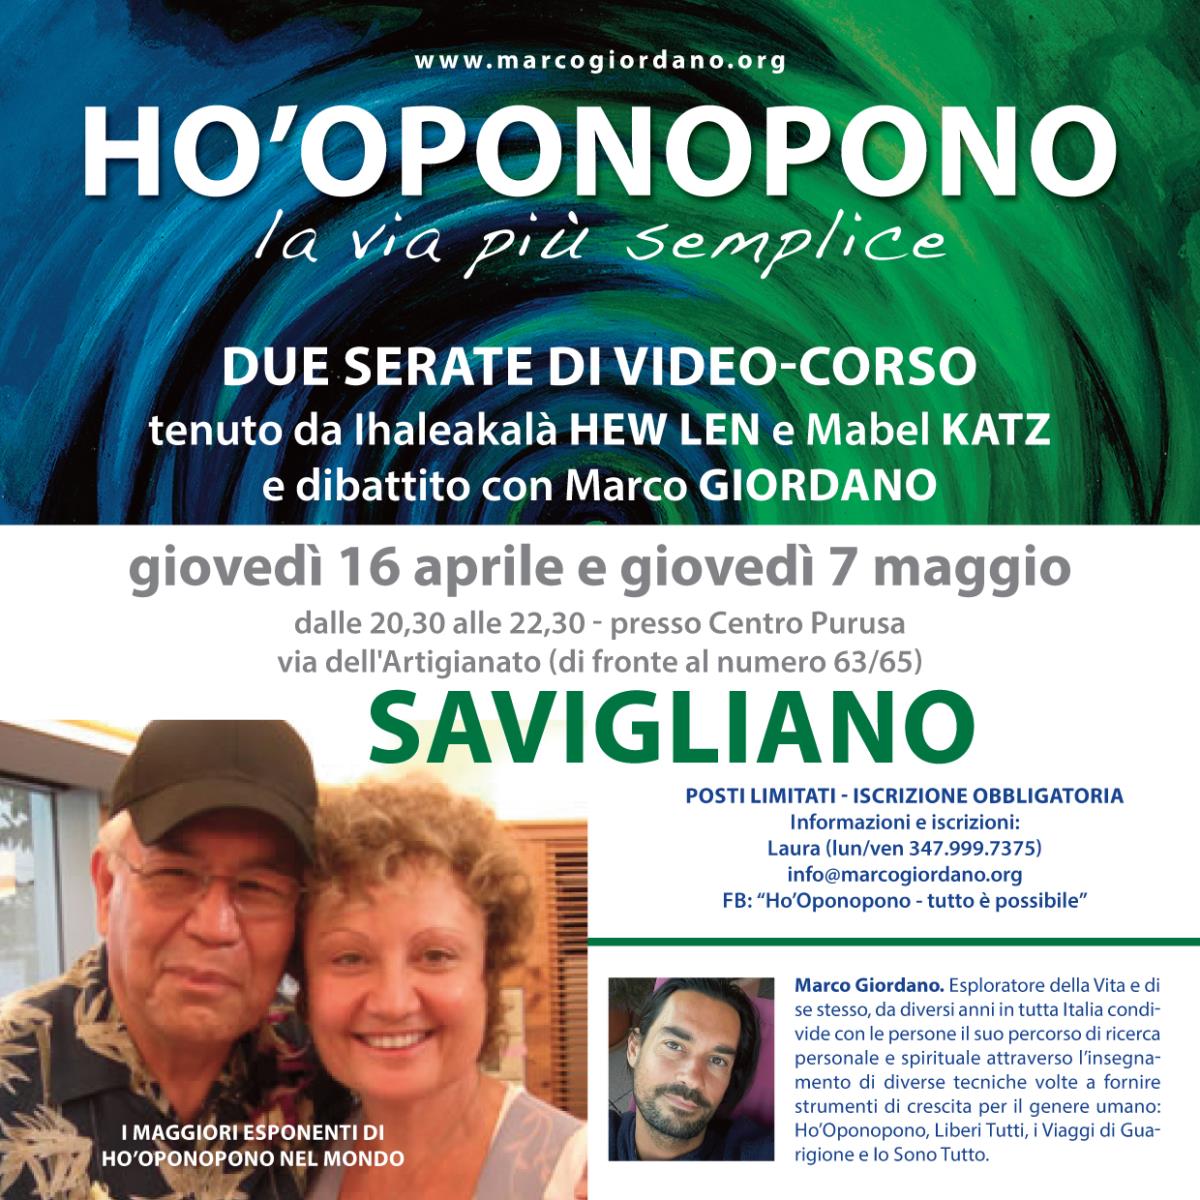 Video-corso - I incontro <b>HO'OPONOPONO</b> gioved 16 aprile <b>SAVIGLIANO (CN)